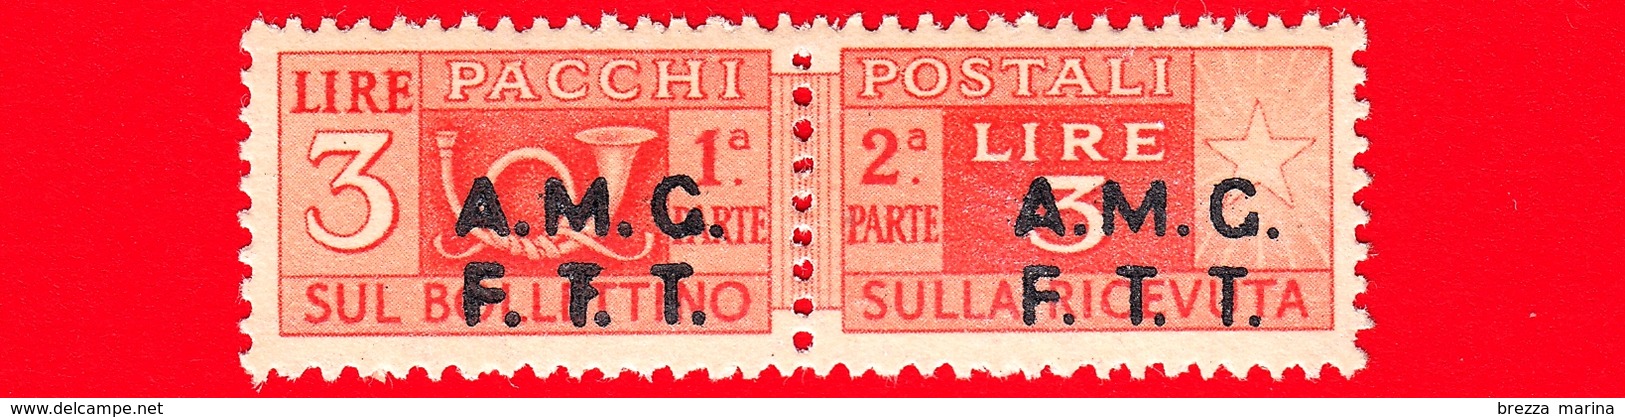 Nuovo - MNH - ITALIA - Trieste - AMG FTT - 1947-48 - Corno Di Posta, Soprastampa Su Due Righe - Pacchi Postali - 3 - Ungebraucht